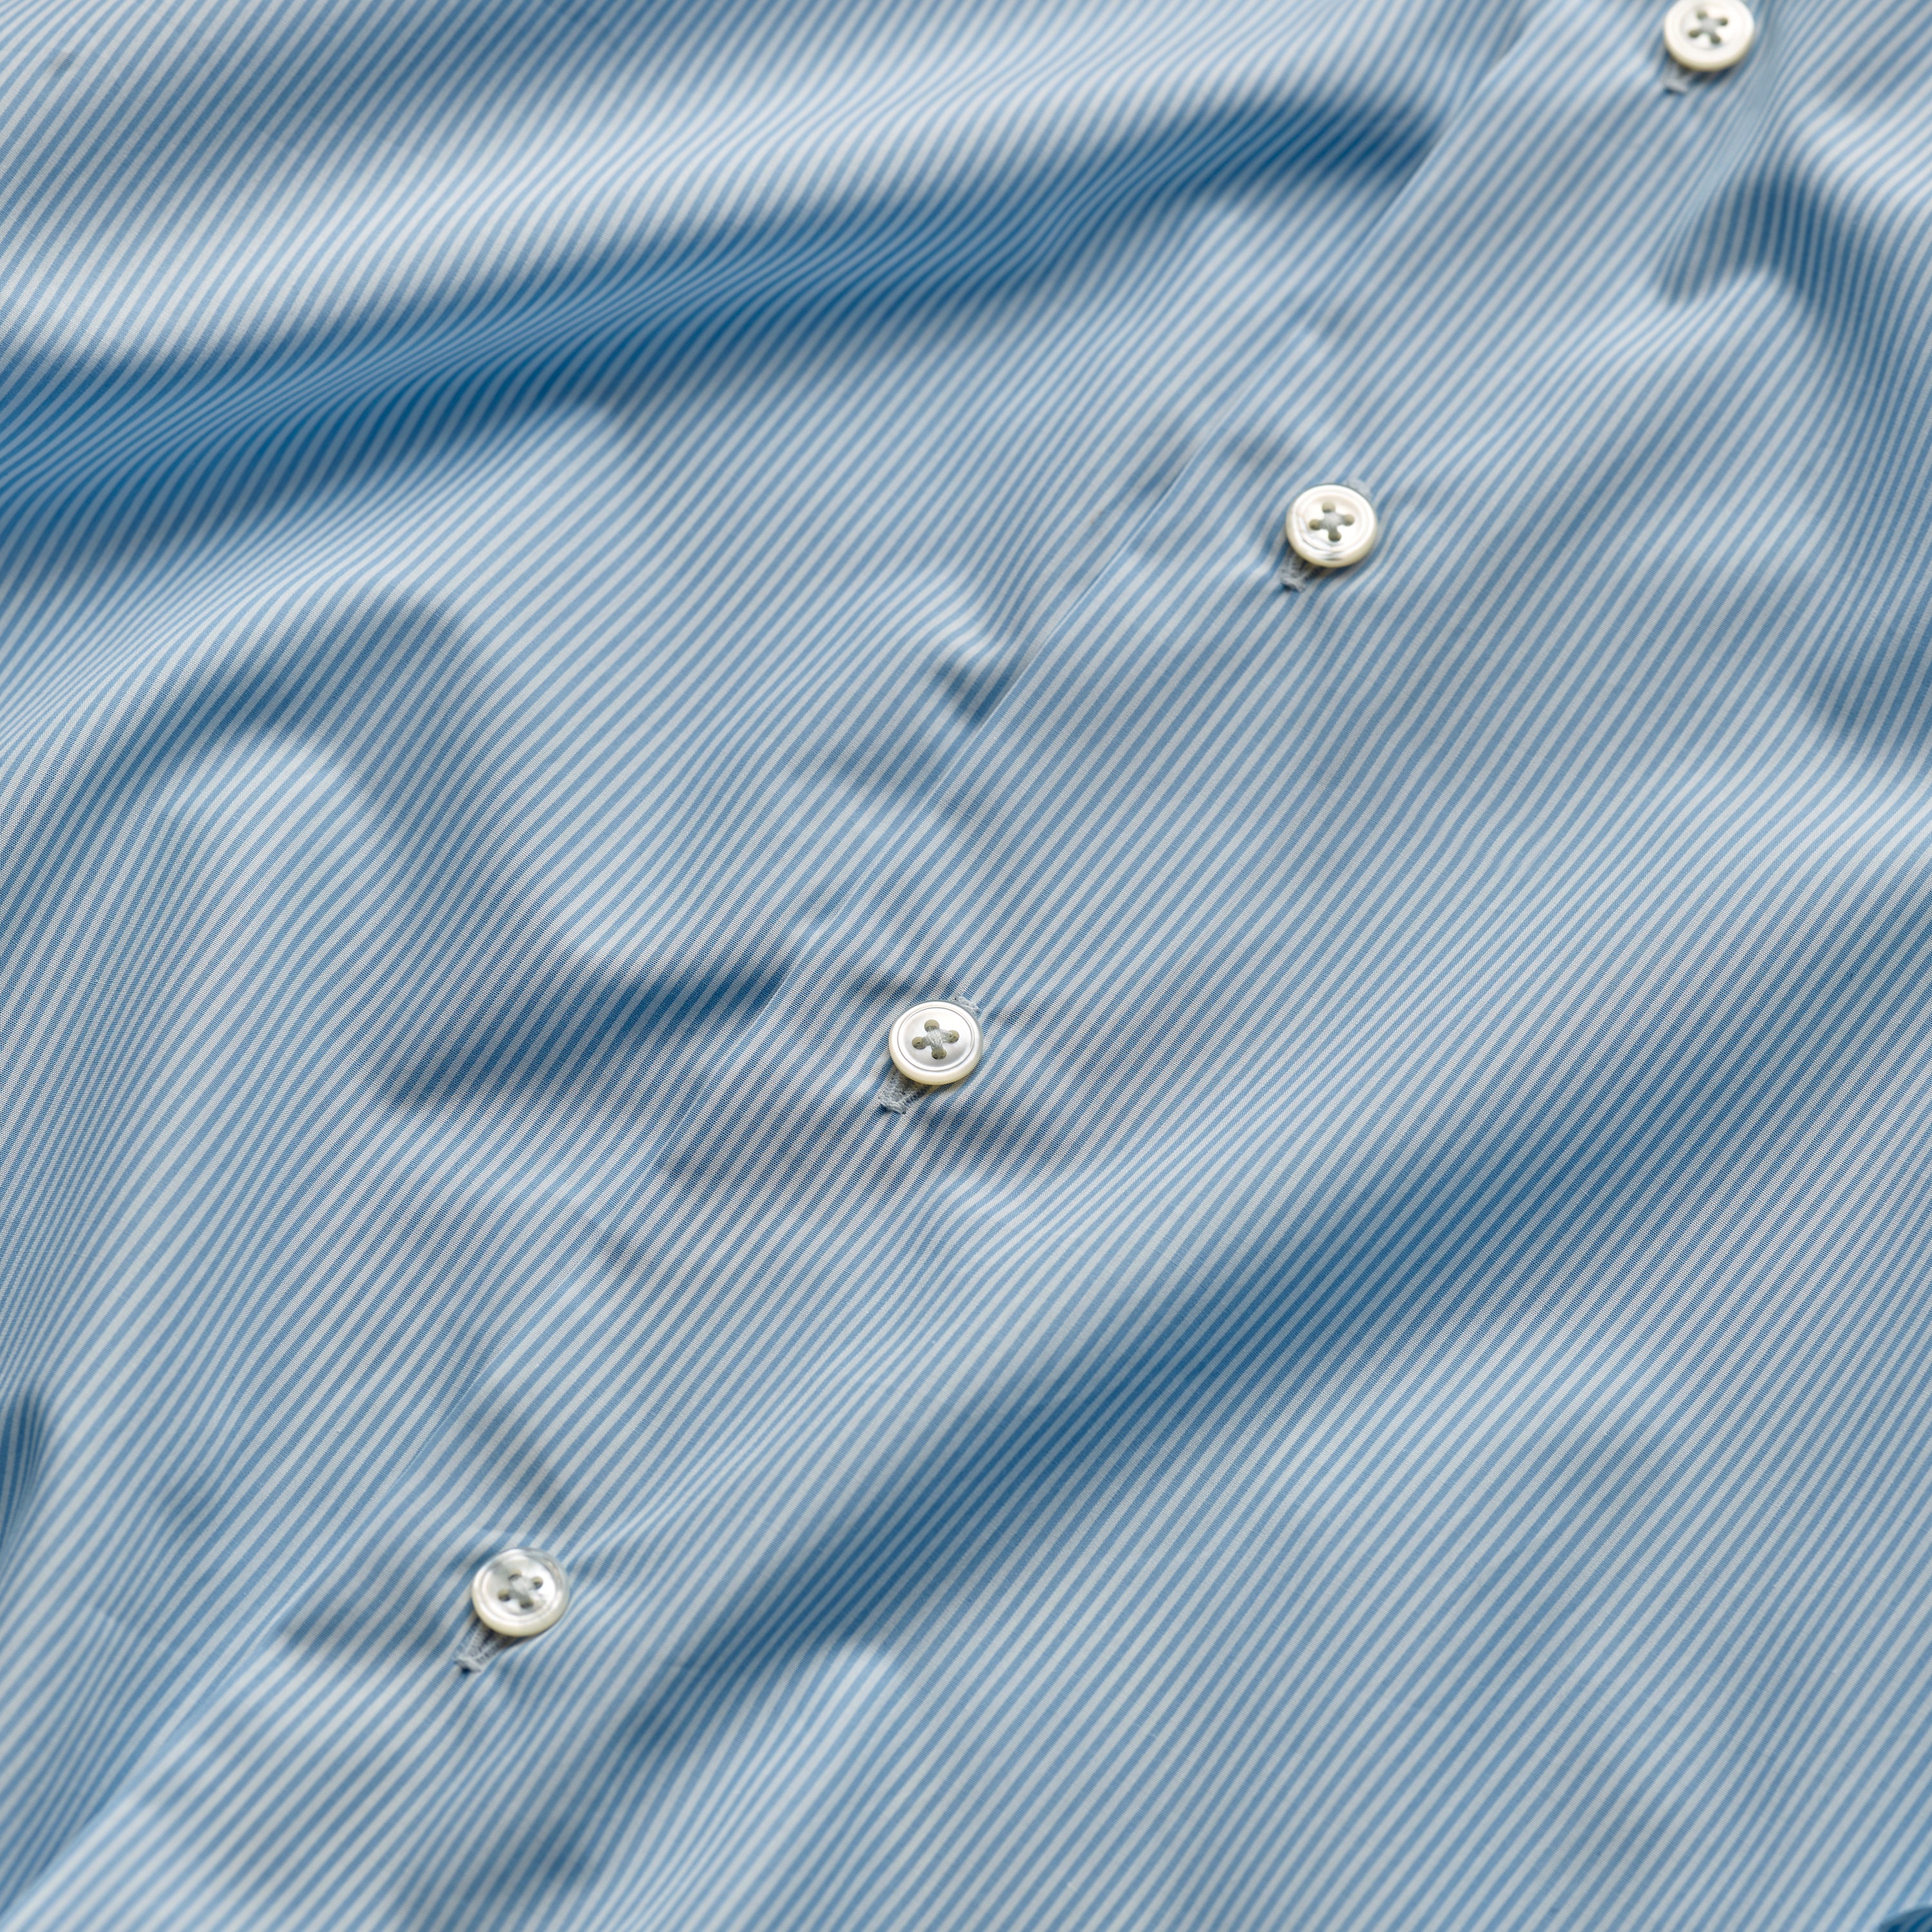 Blue & White Striped Carlo Riva Button-Down Double Cuff Shirt